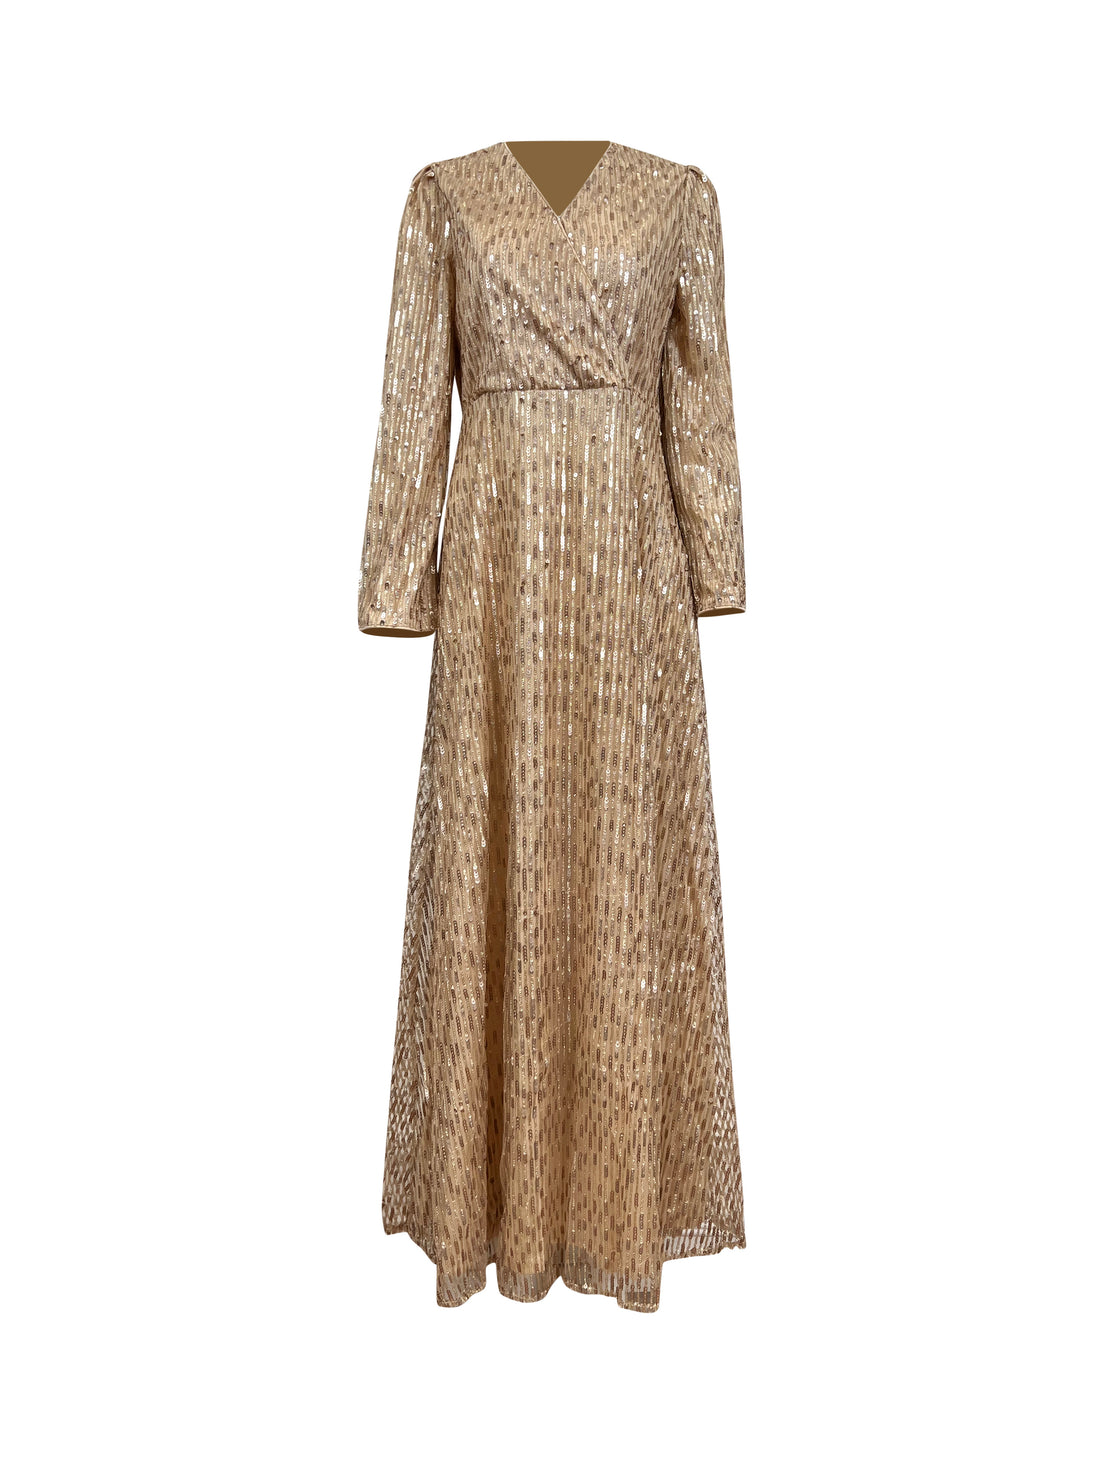 FairyDust Sequin Dress - Golden Cascades